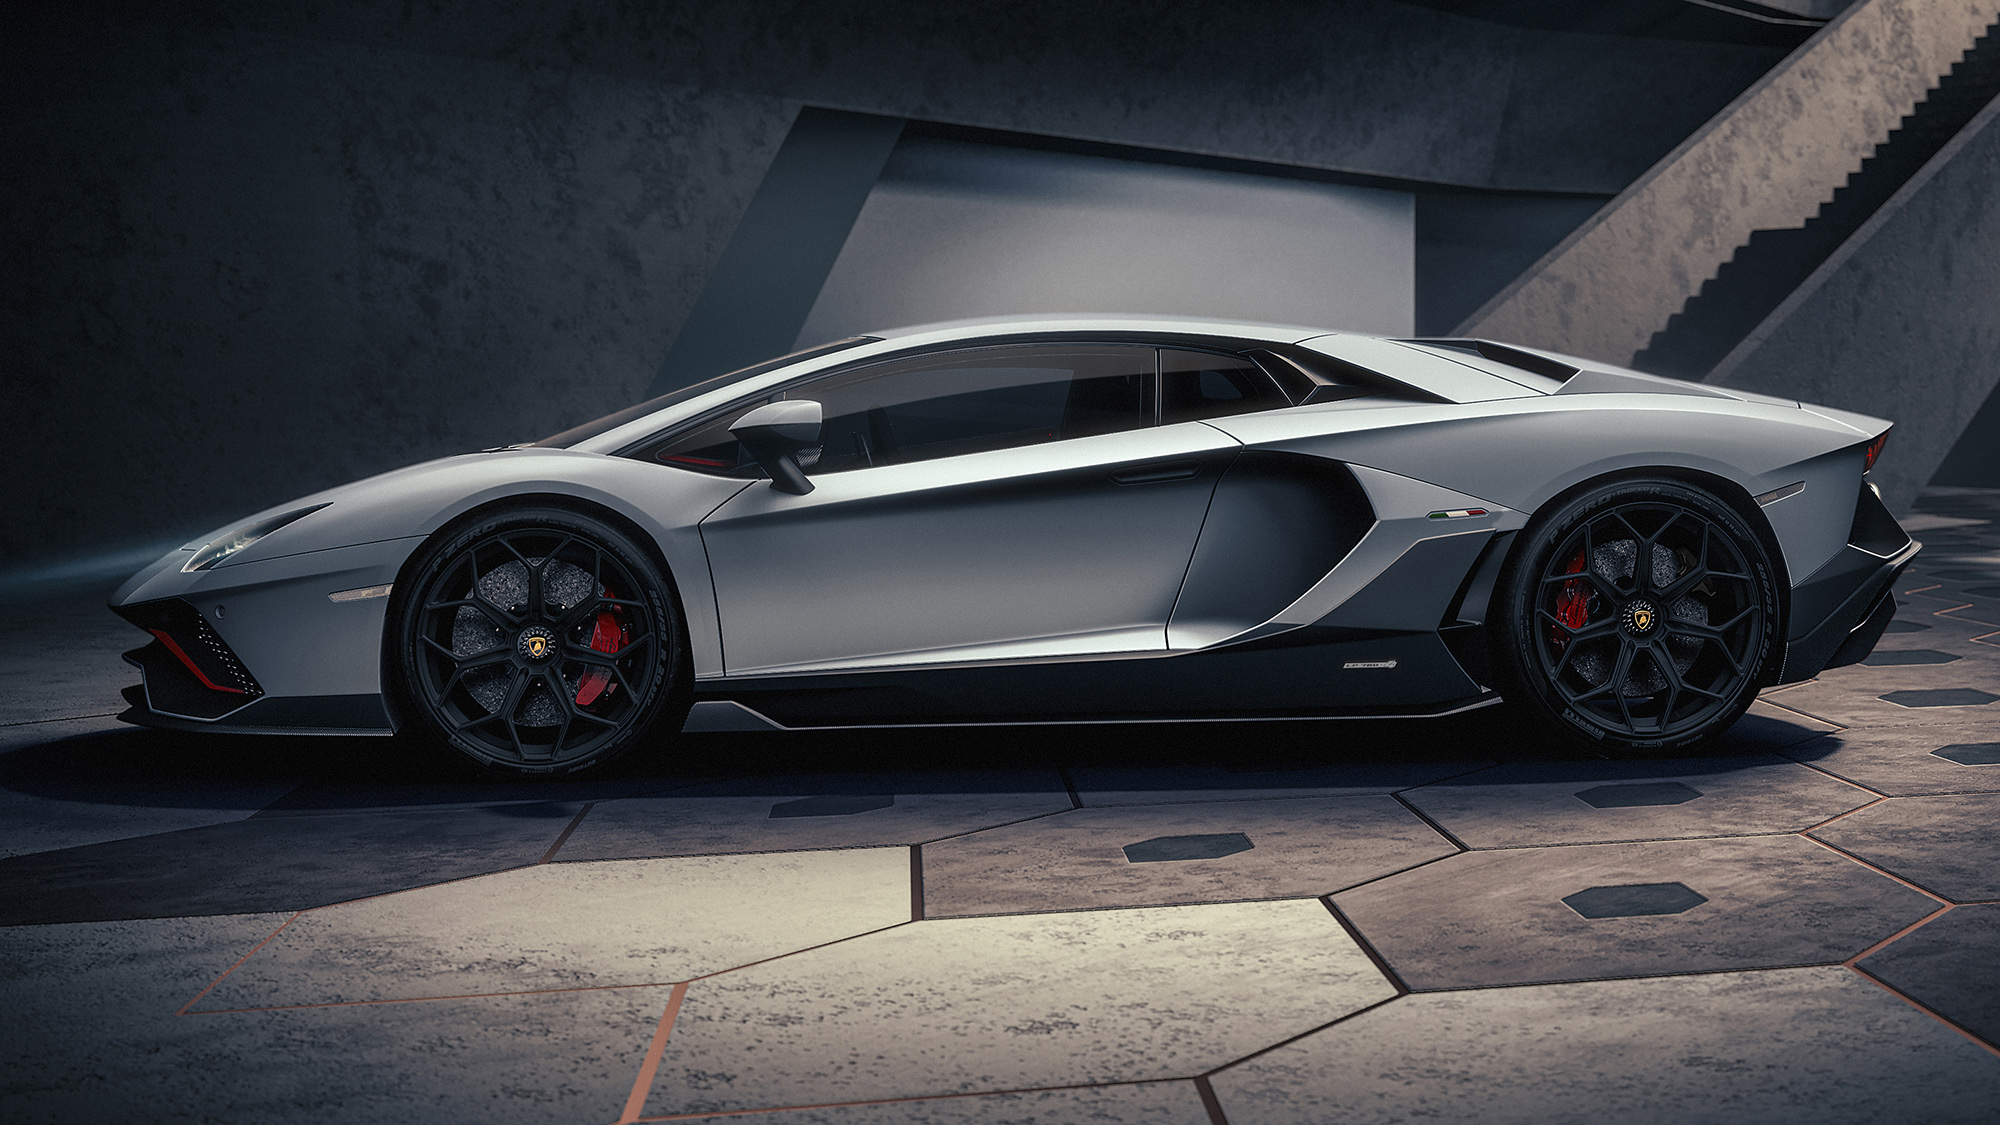 Lamborghini Aventador terá produção retomada após naufrágio de navio |  Quatro Rodas